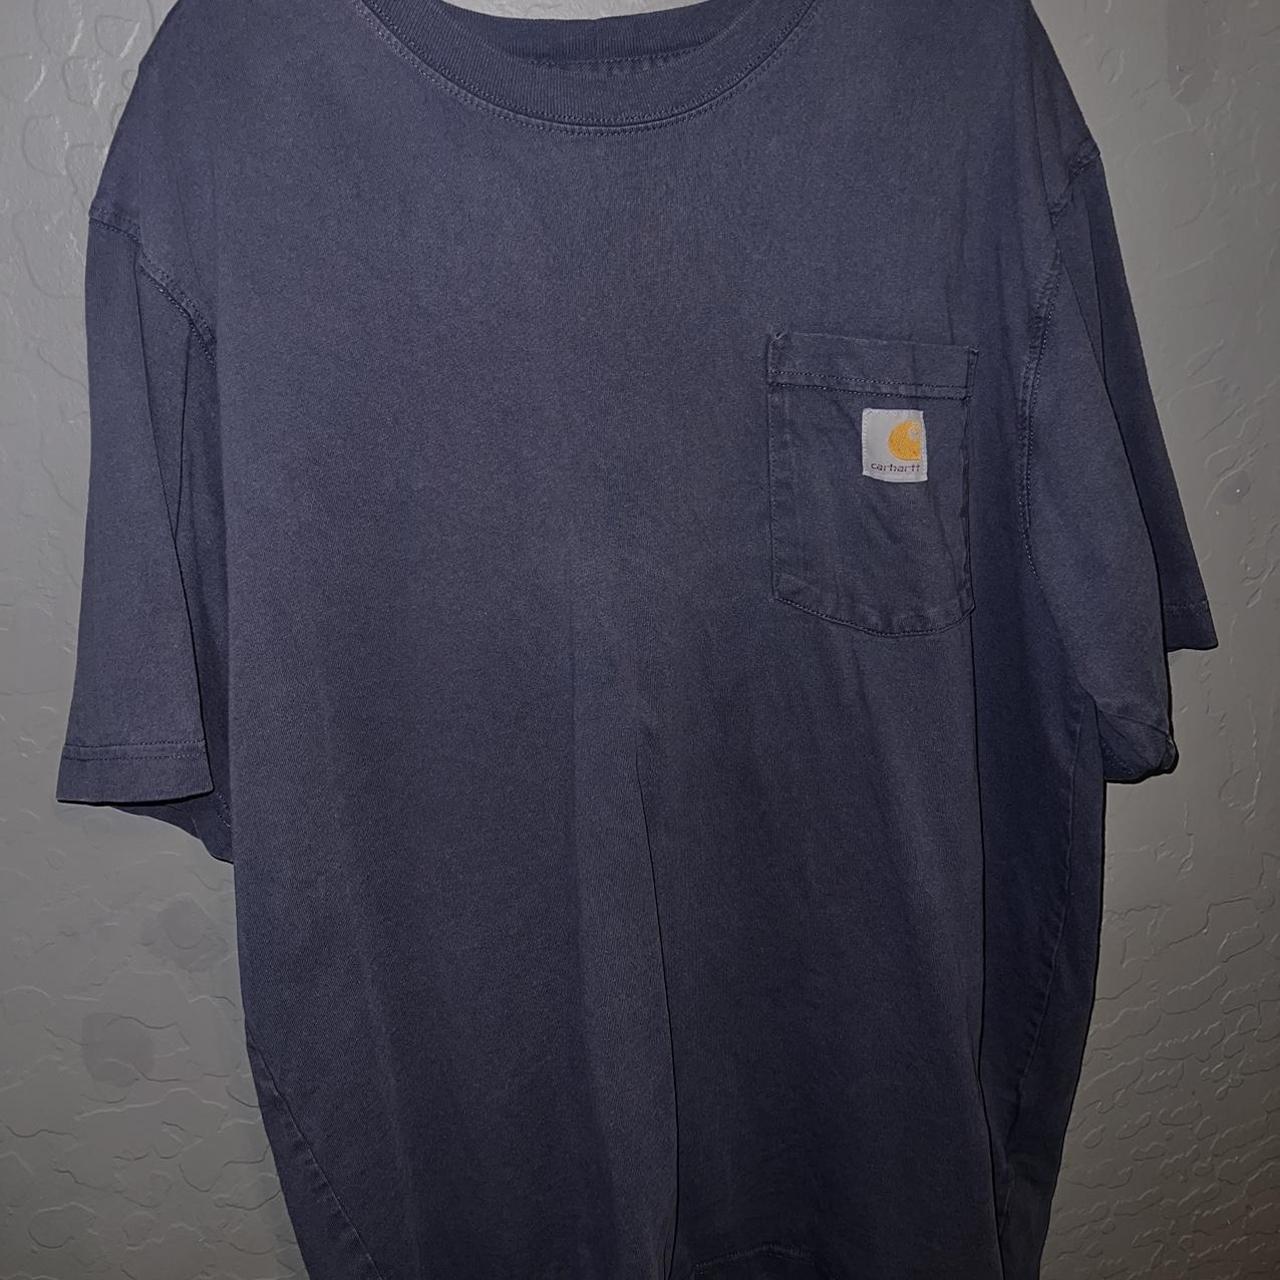 Carthart carpenter shirt Large loose fit, worn a few... - Depop